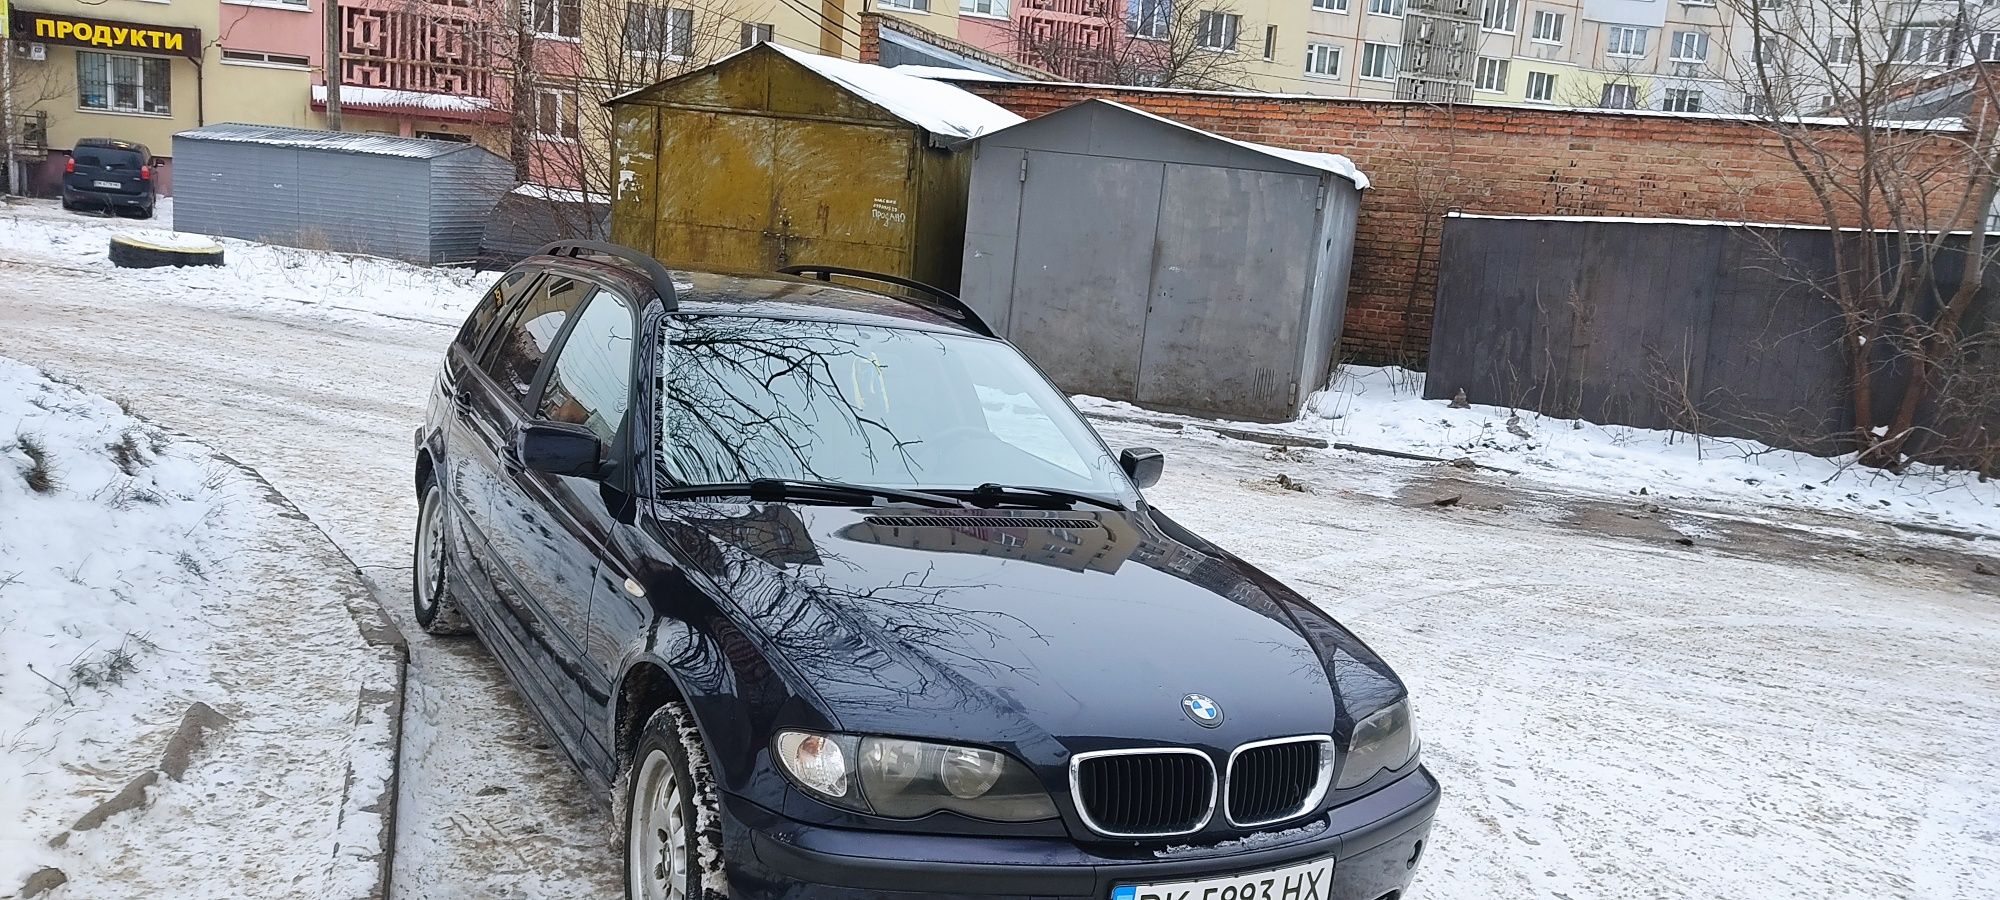 BMW E46 320D 110kw